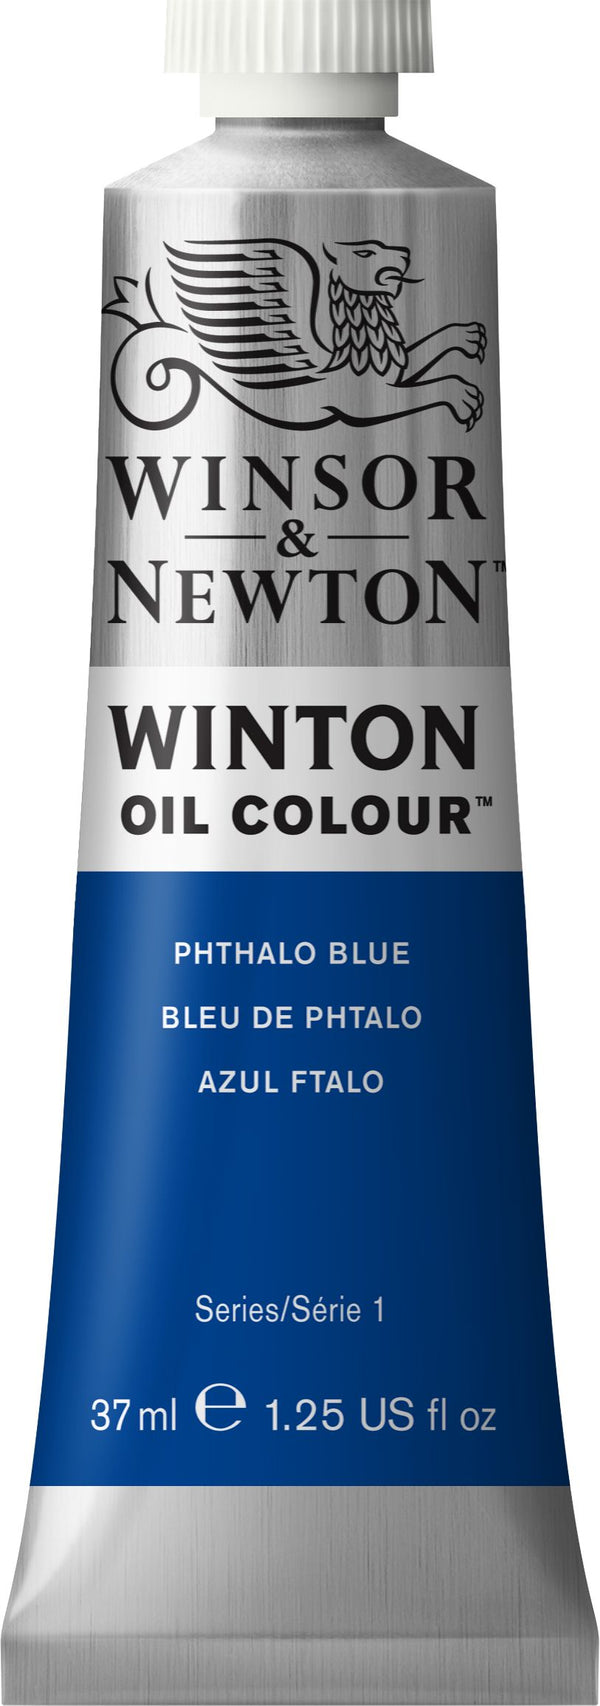 Winton Oil Colour Phthalo Blue - 37ml tube